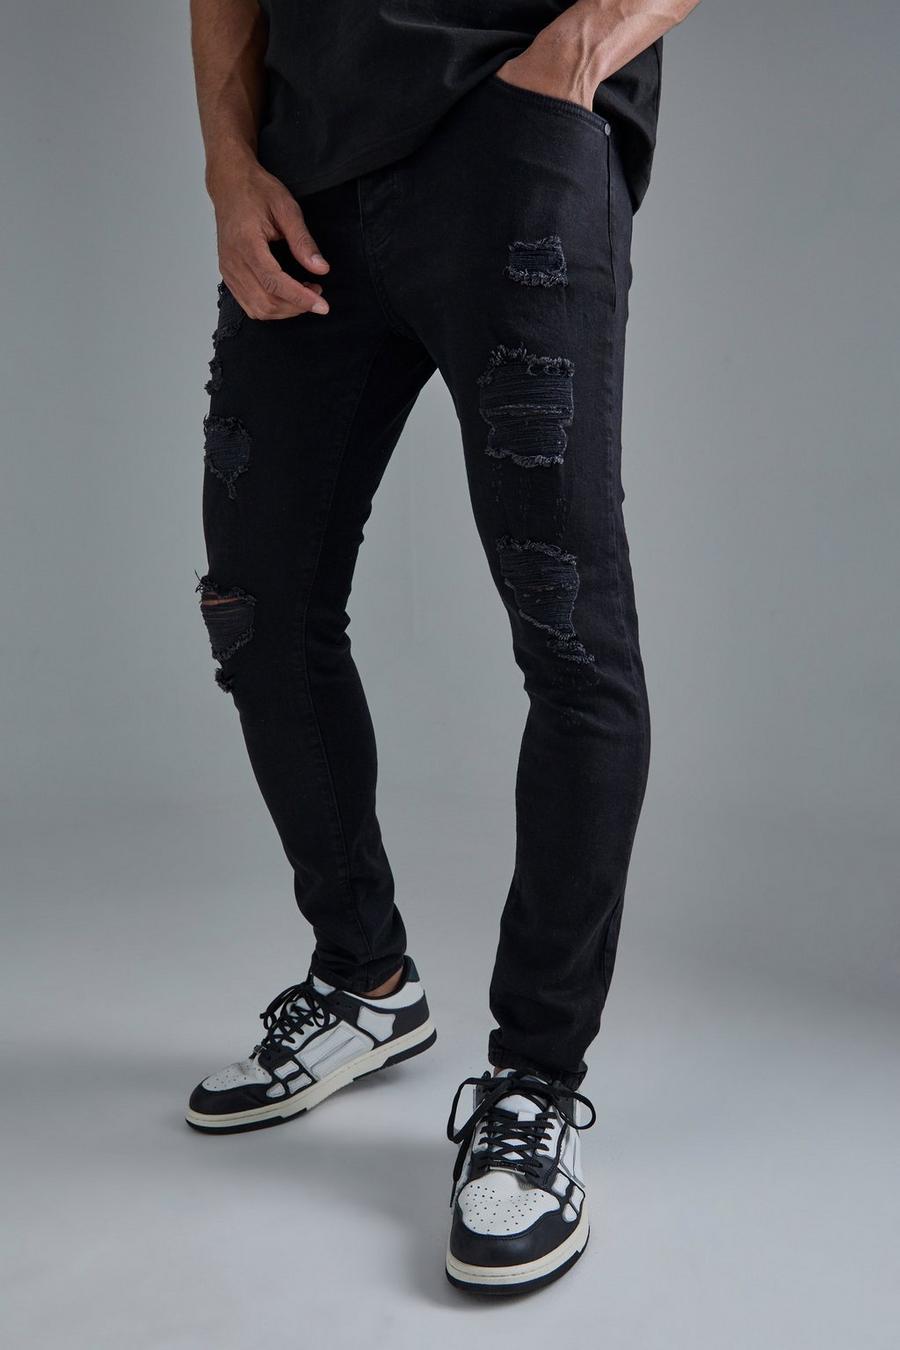 שחור אמיתי סקיני ג'ינס נמתח עם קרעים לכל האורך